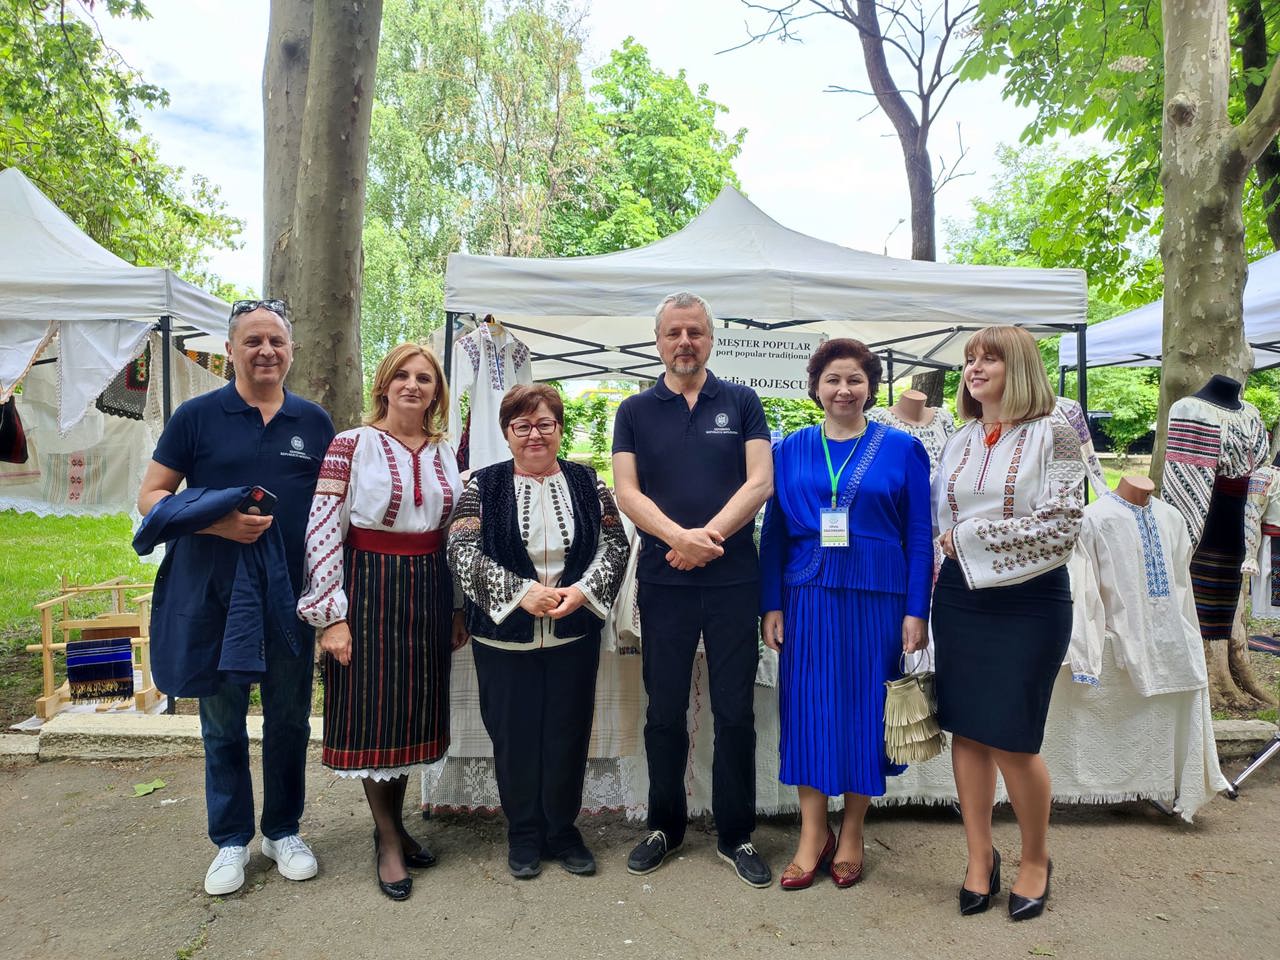 Meșterii populari se pregătesc de un târg ce va fi organizat la Chișinău, dar și de Festivalul Tradițiilor Românești din 17-19 mai